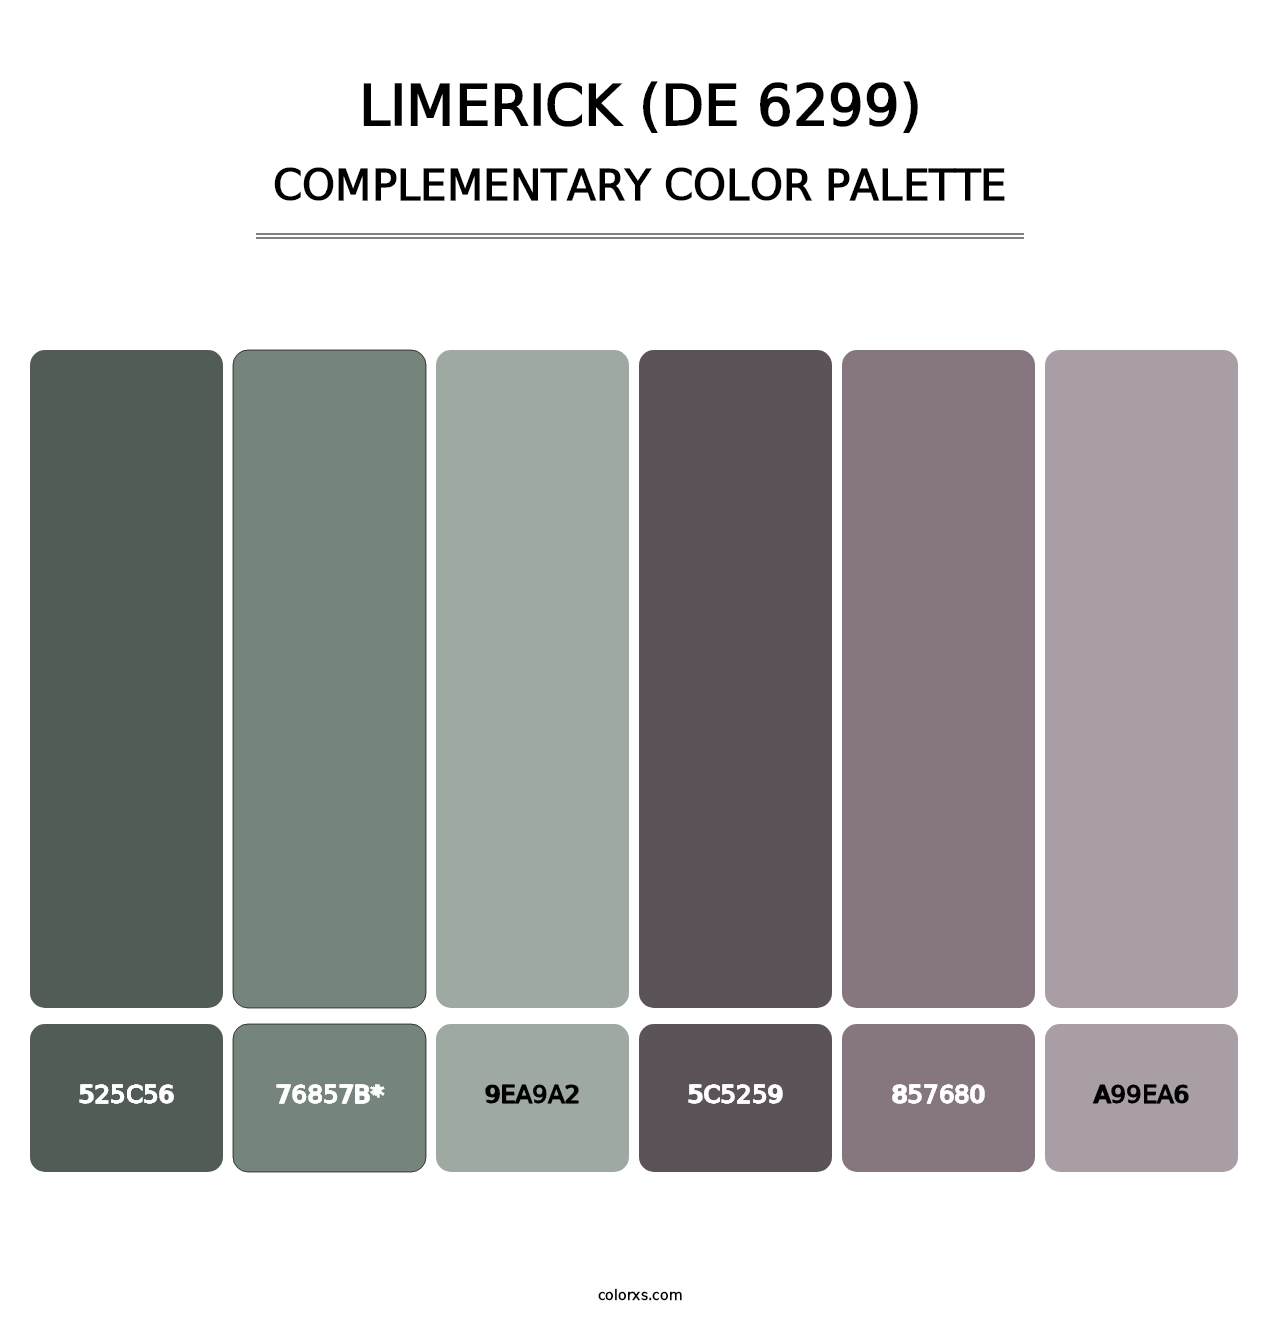 Limerick (DE 6299) - Complementary Color Palette